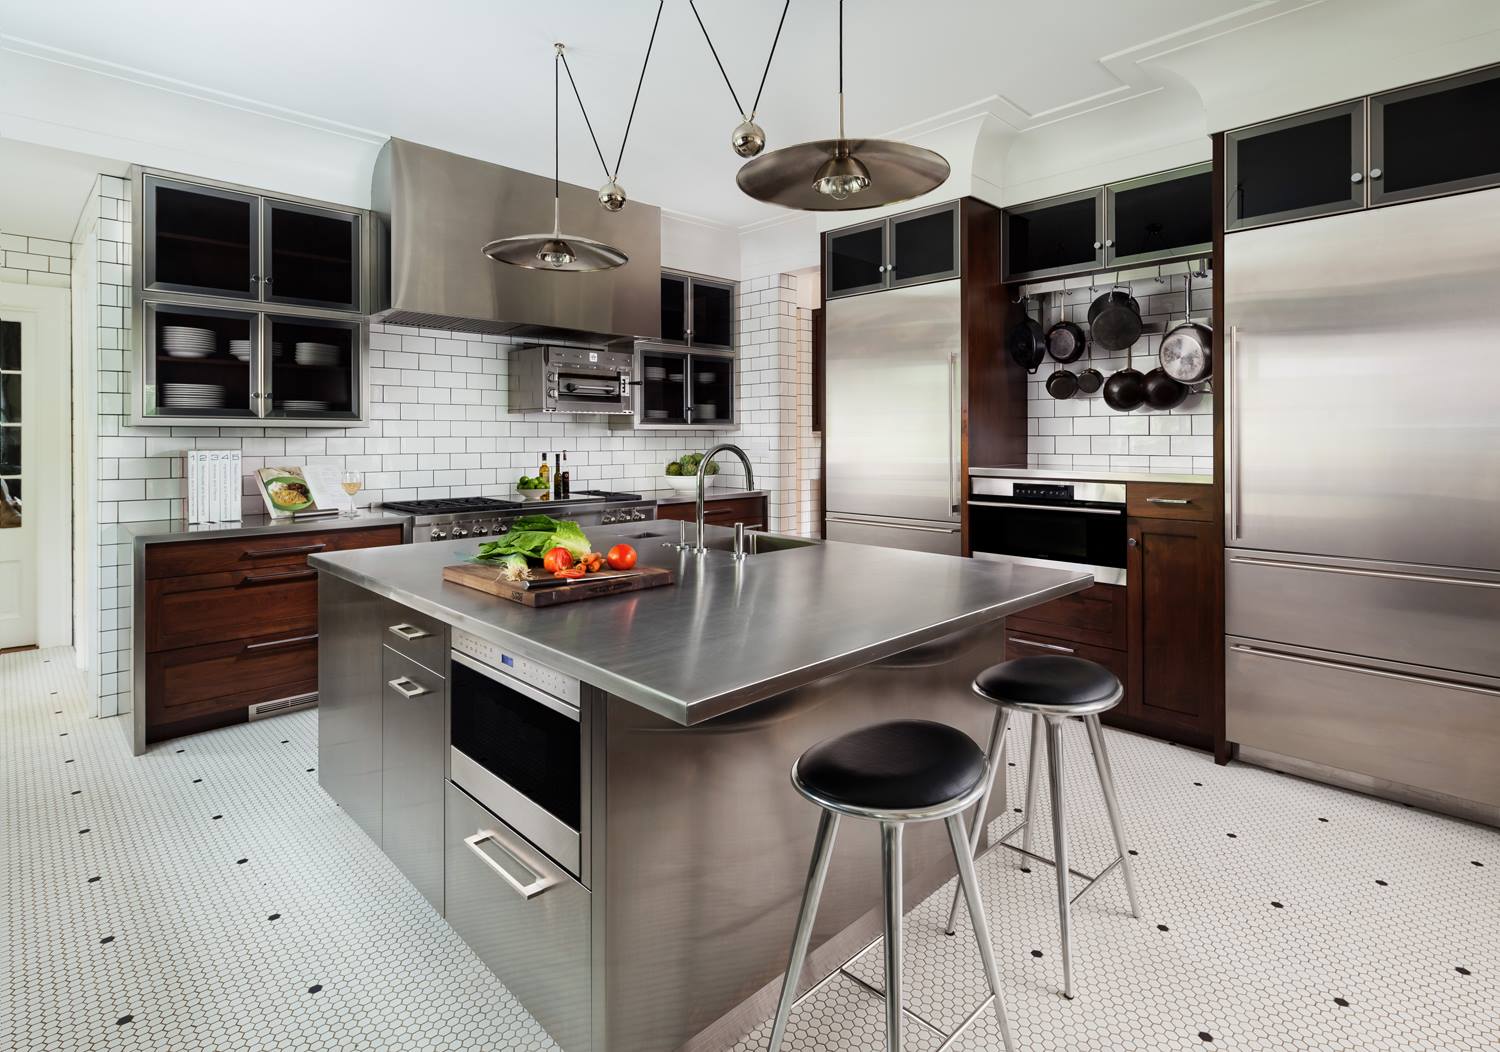 stainless steel kitchen design